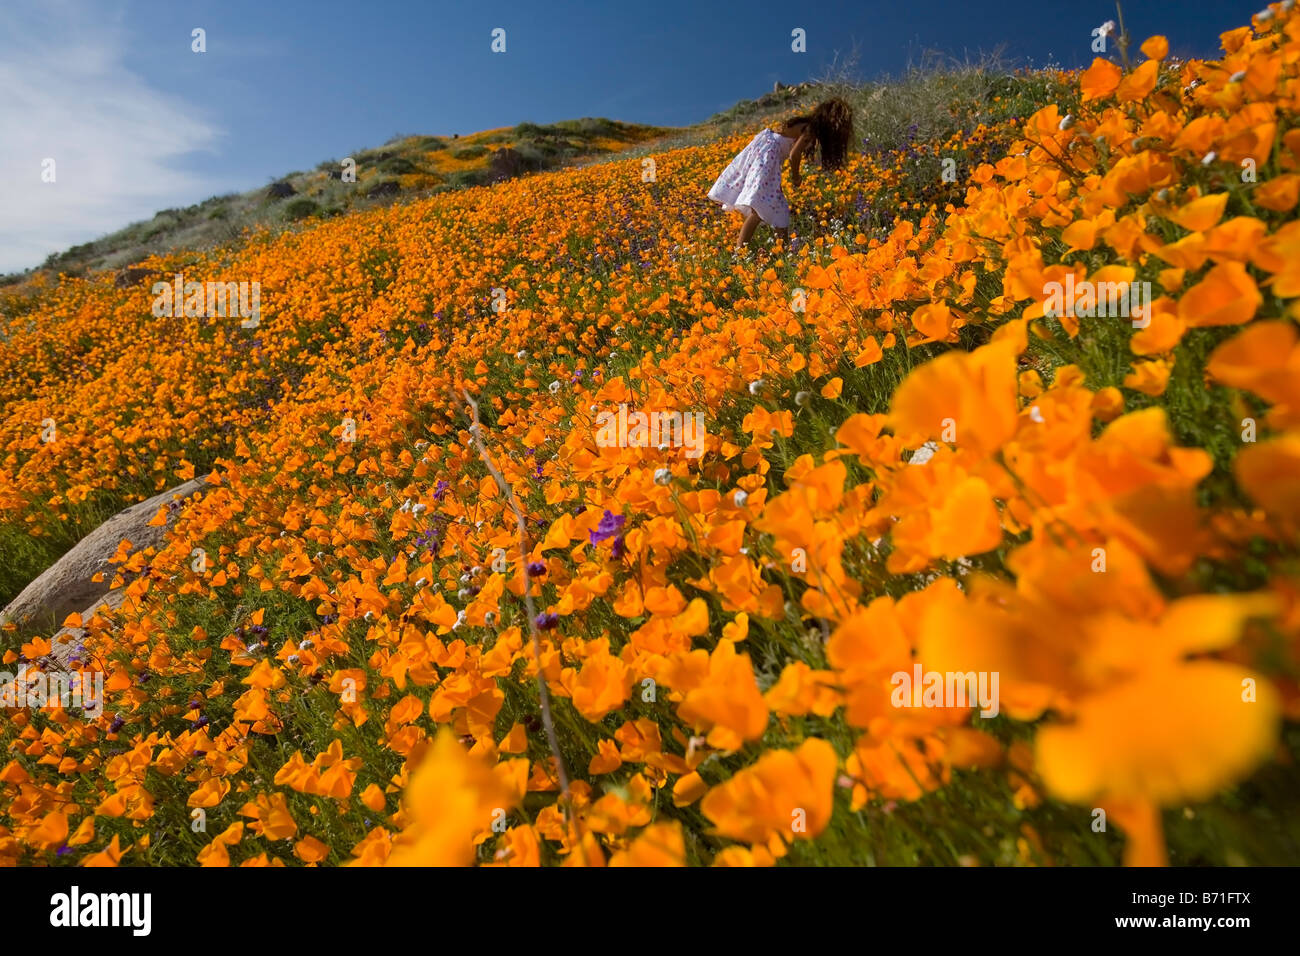 kleines Mädchen 7 Jahre alt Kommissionierung California Poppies von einem Hügel in Lake Elsinore riverside County Kalifornien Usa Herr Stockfoto